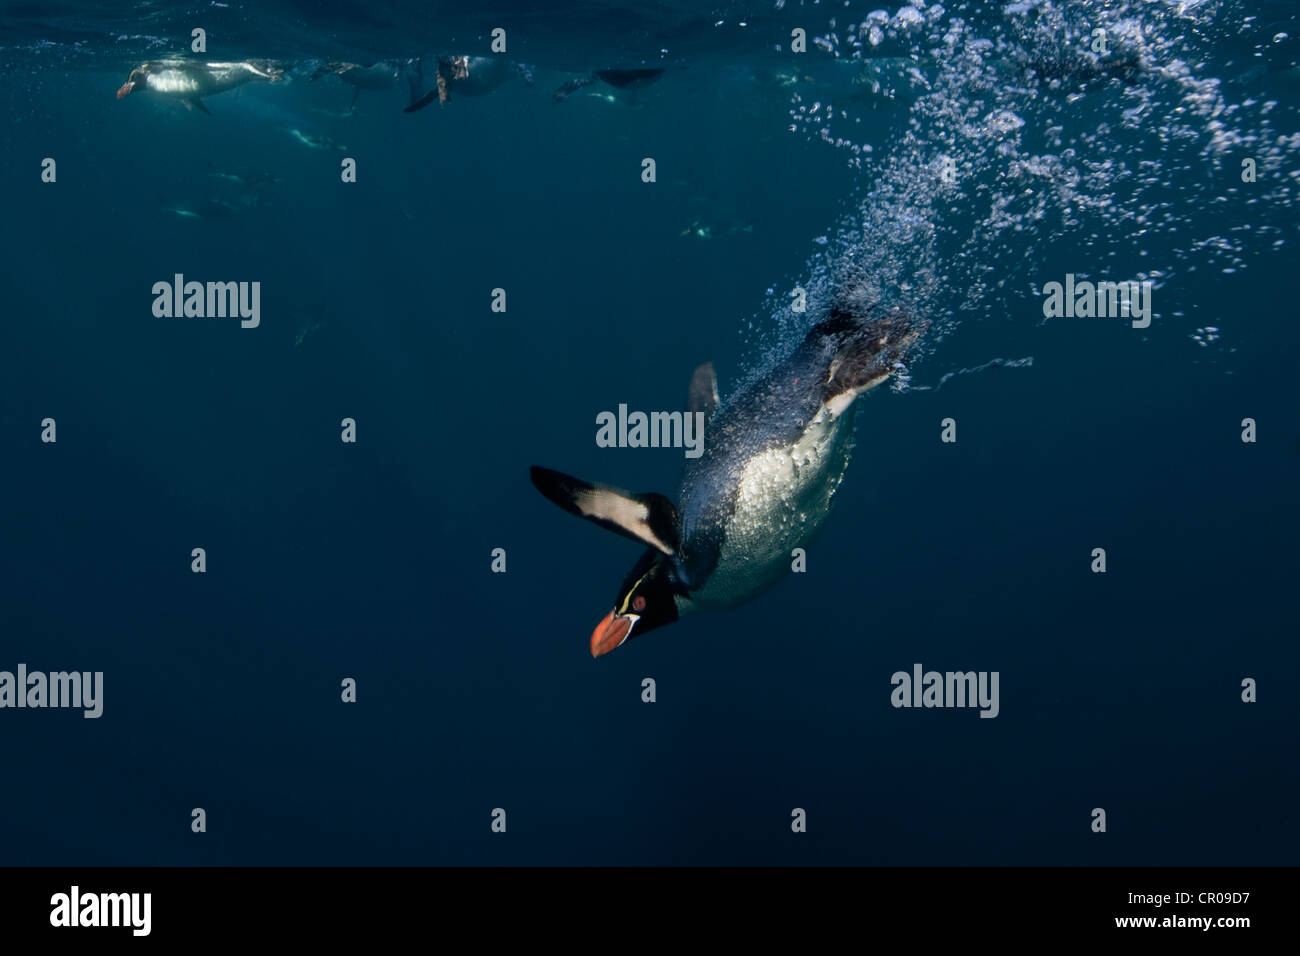 Crested Pinguin Schwimmen unter Wasser Stockfoto